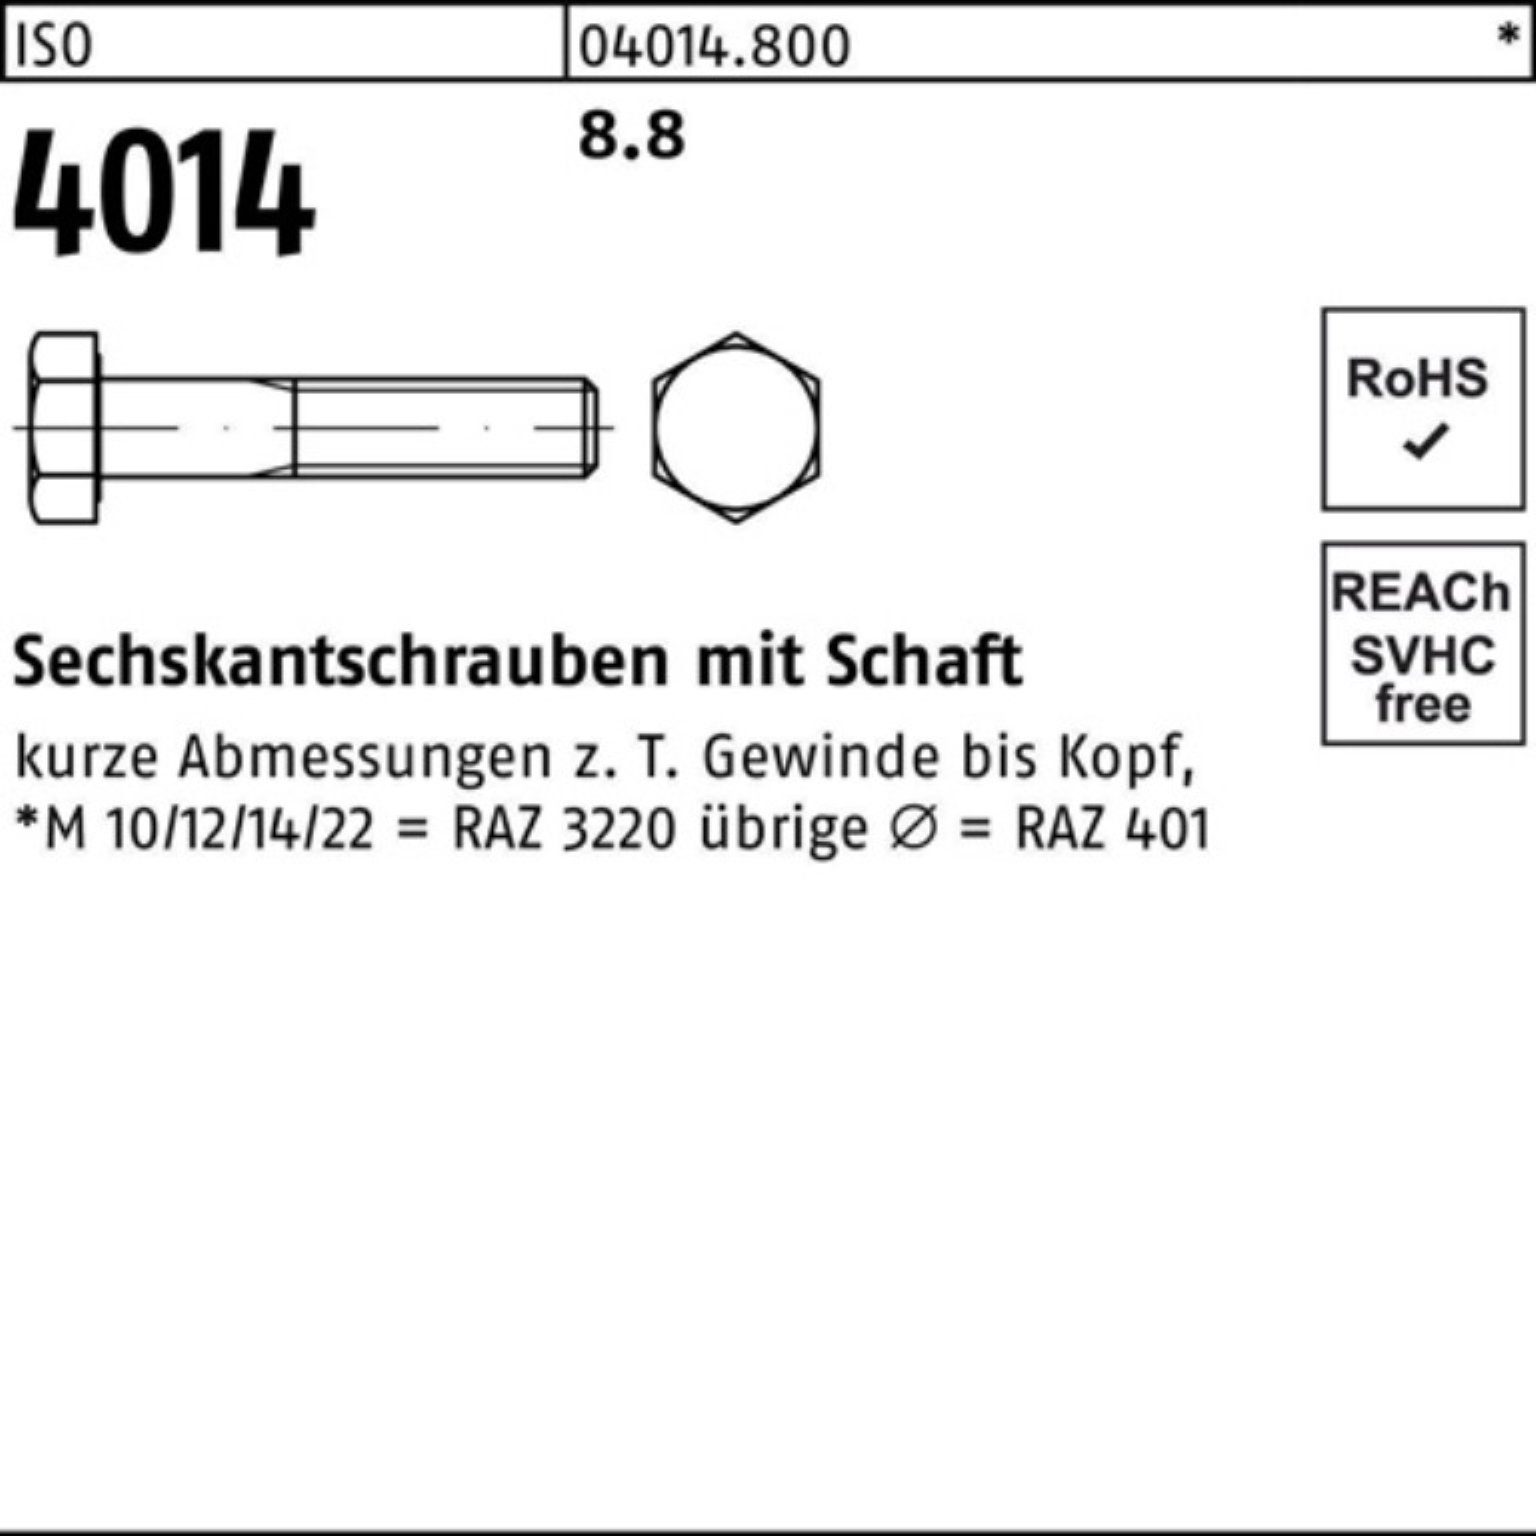 Pack 220 IS Schaft Bufab Sechskantschraube 8.8 Stück ISO 100er 4014 Sechskantschraube M10x 50